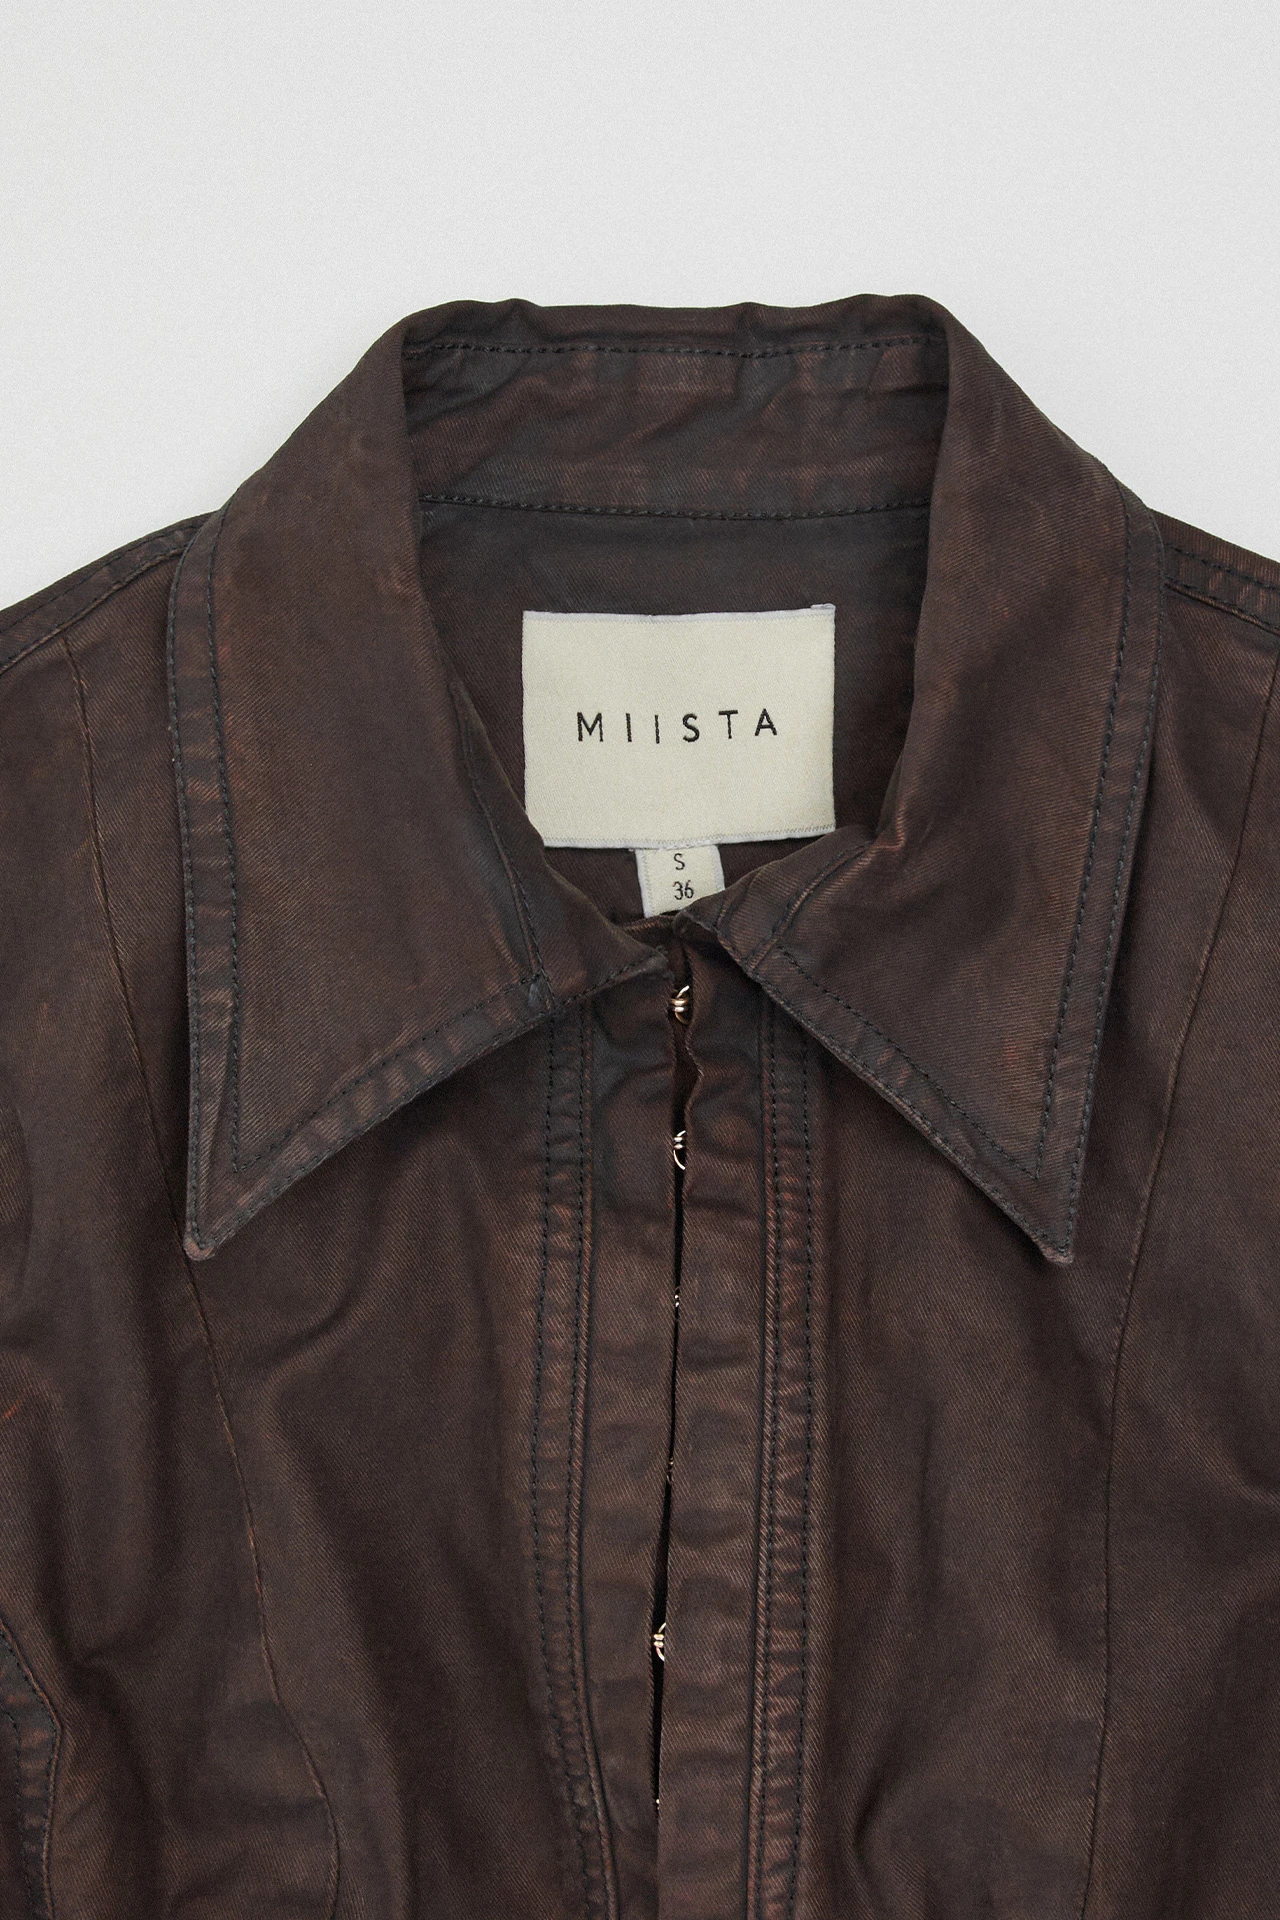 Miista-costa-tan-shirt-03